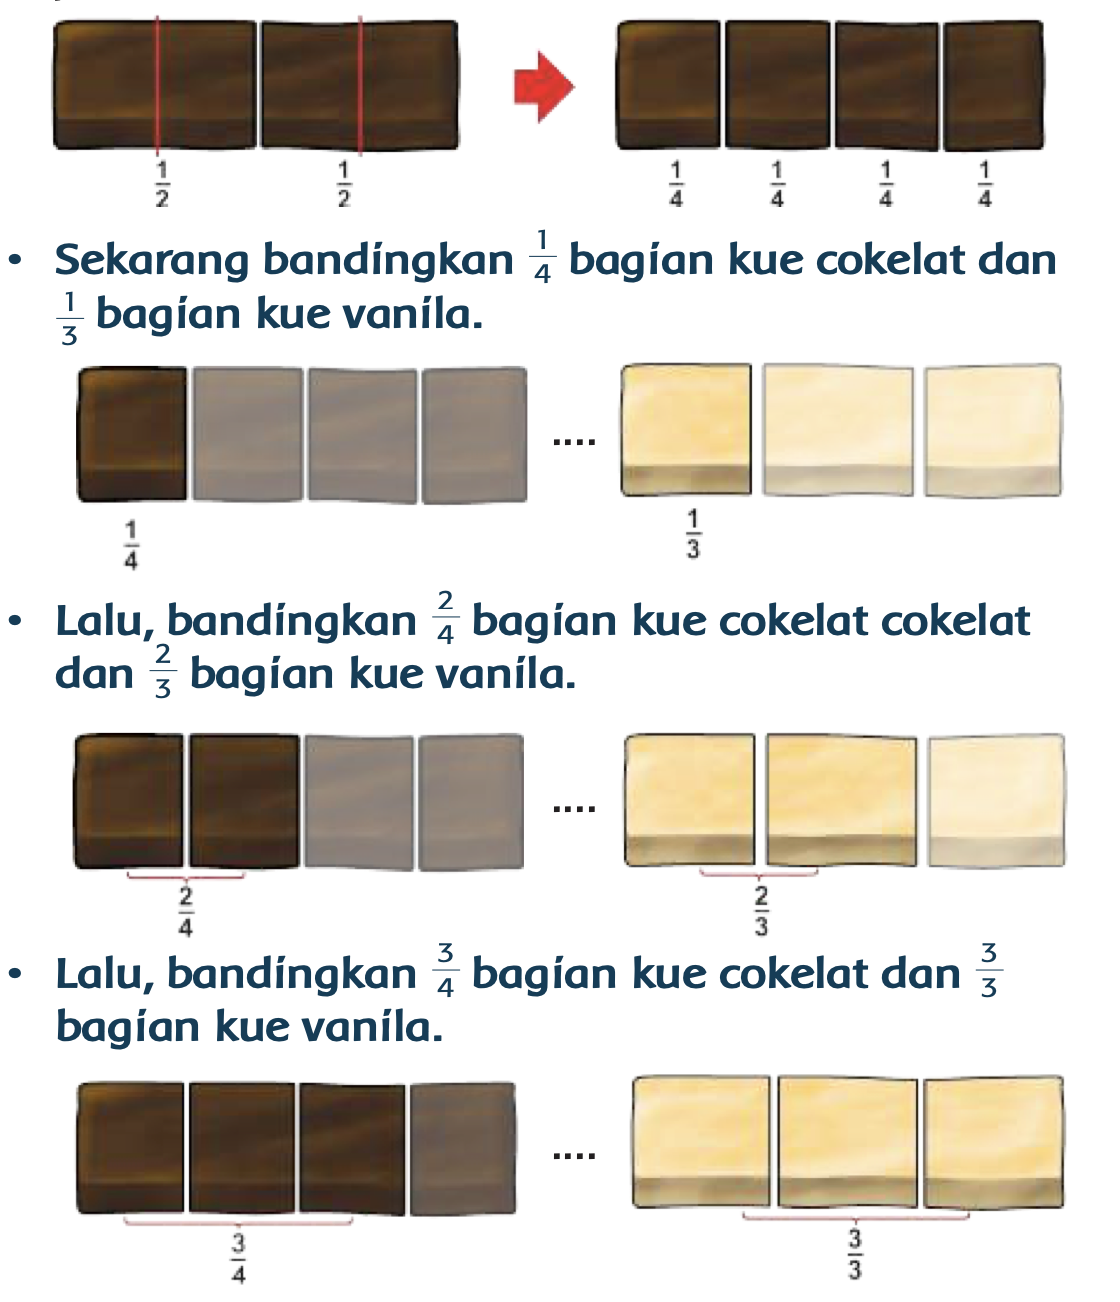 Belajar perbandingan kue cokelat dan kue vanila